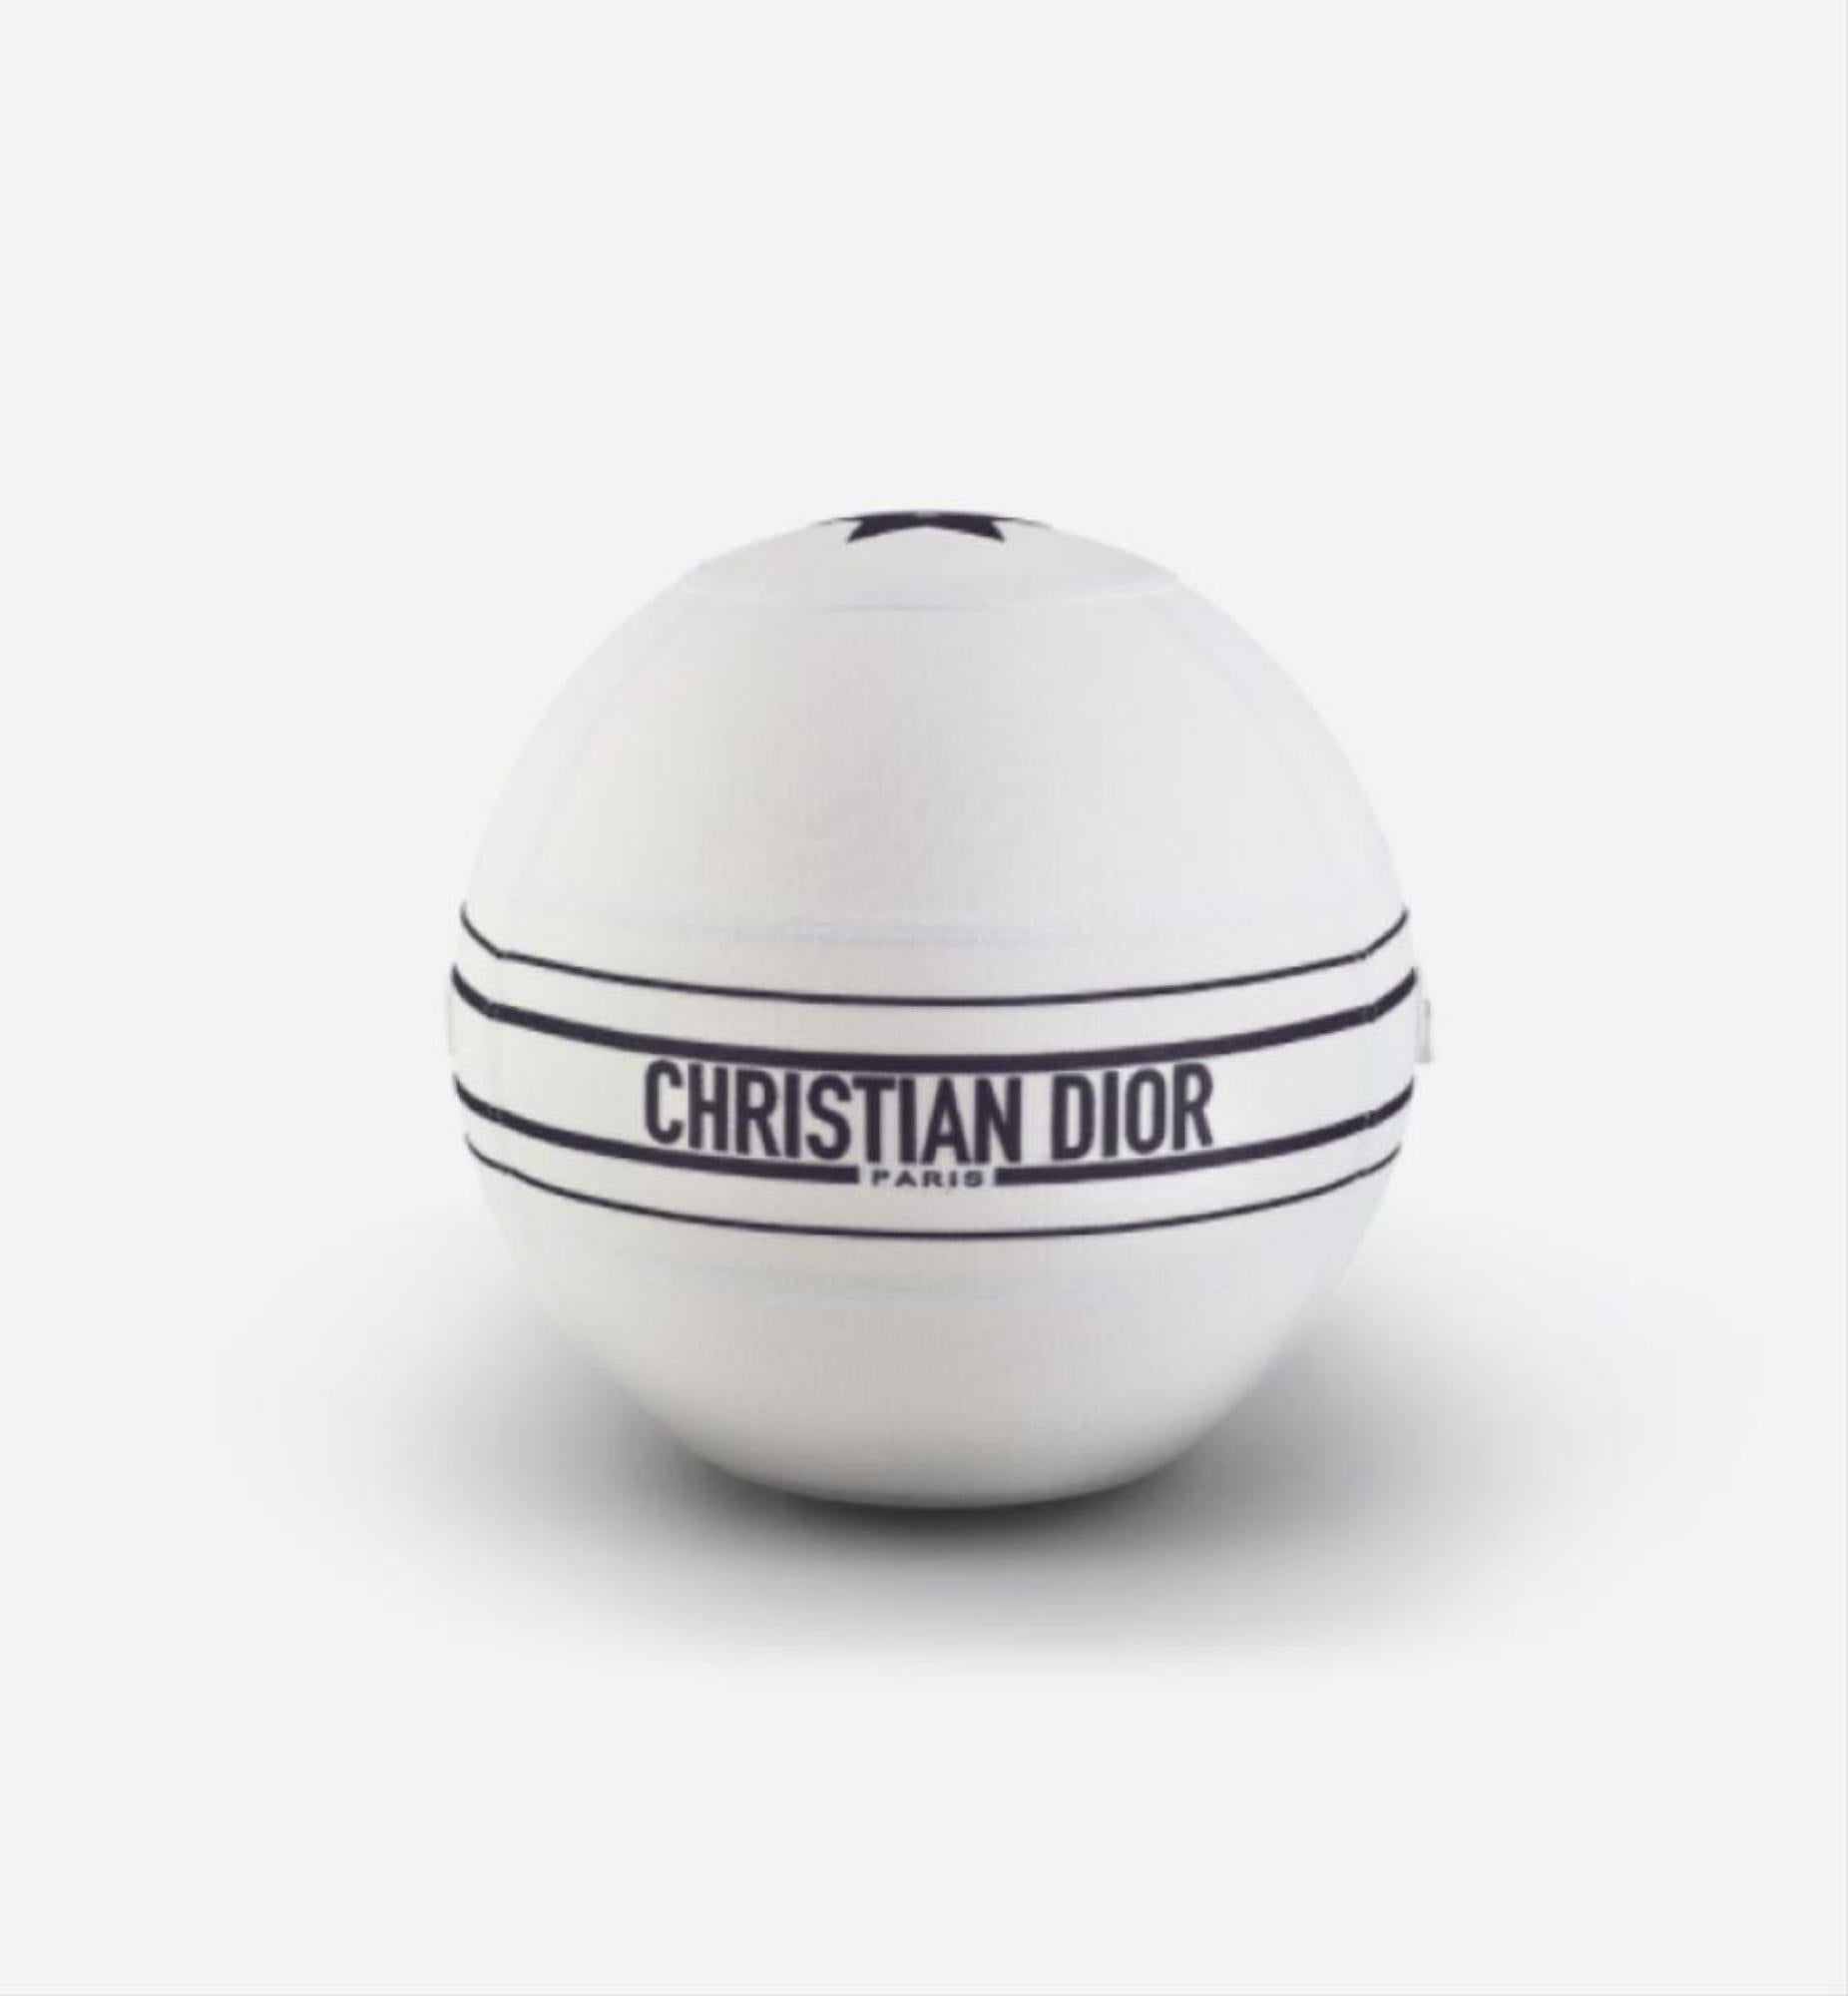 christian dior exercise ball